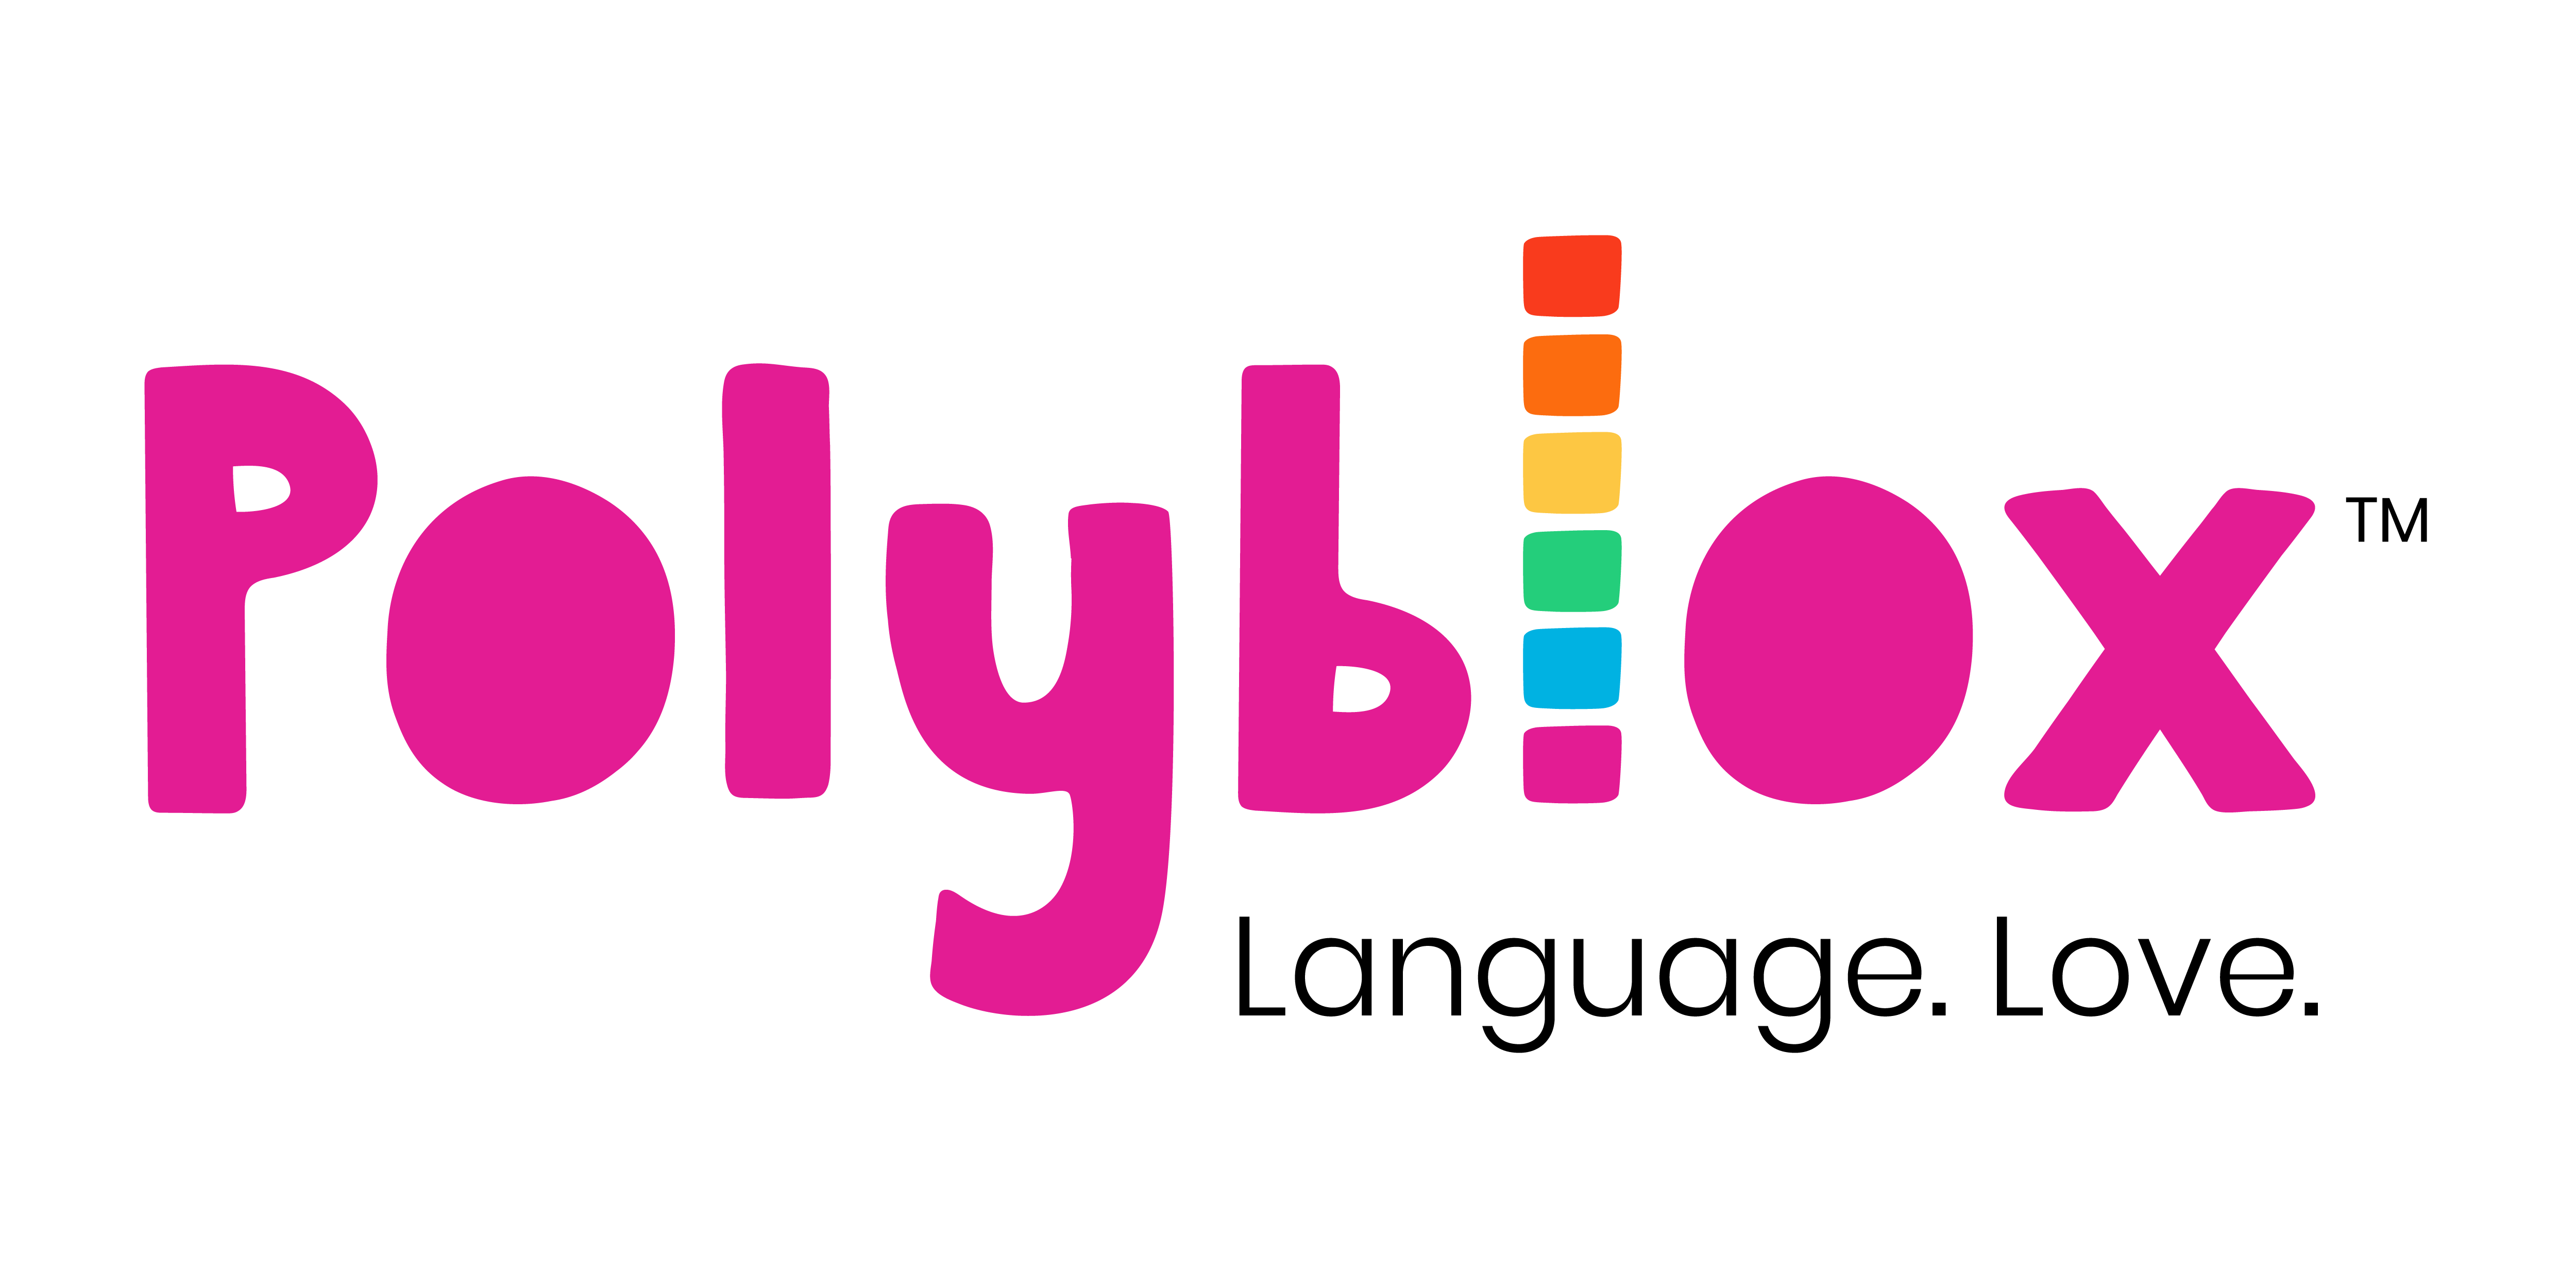 Polyblox